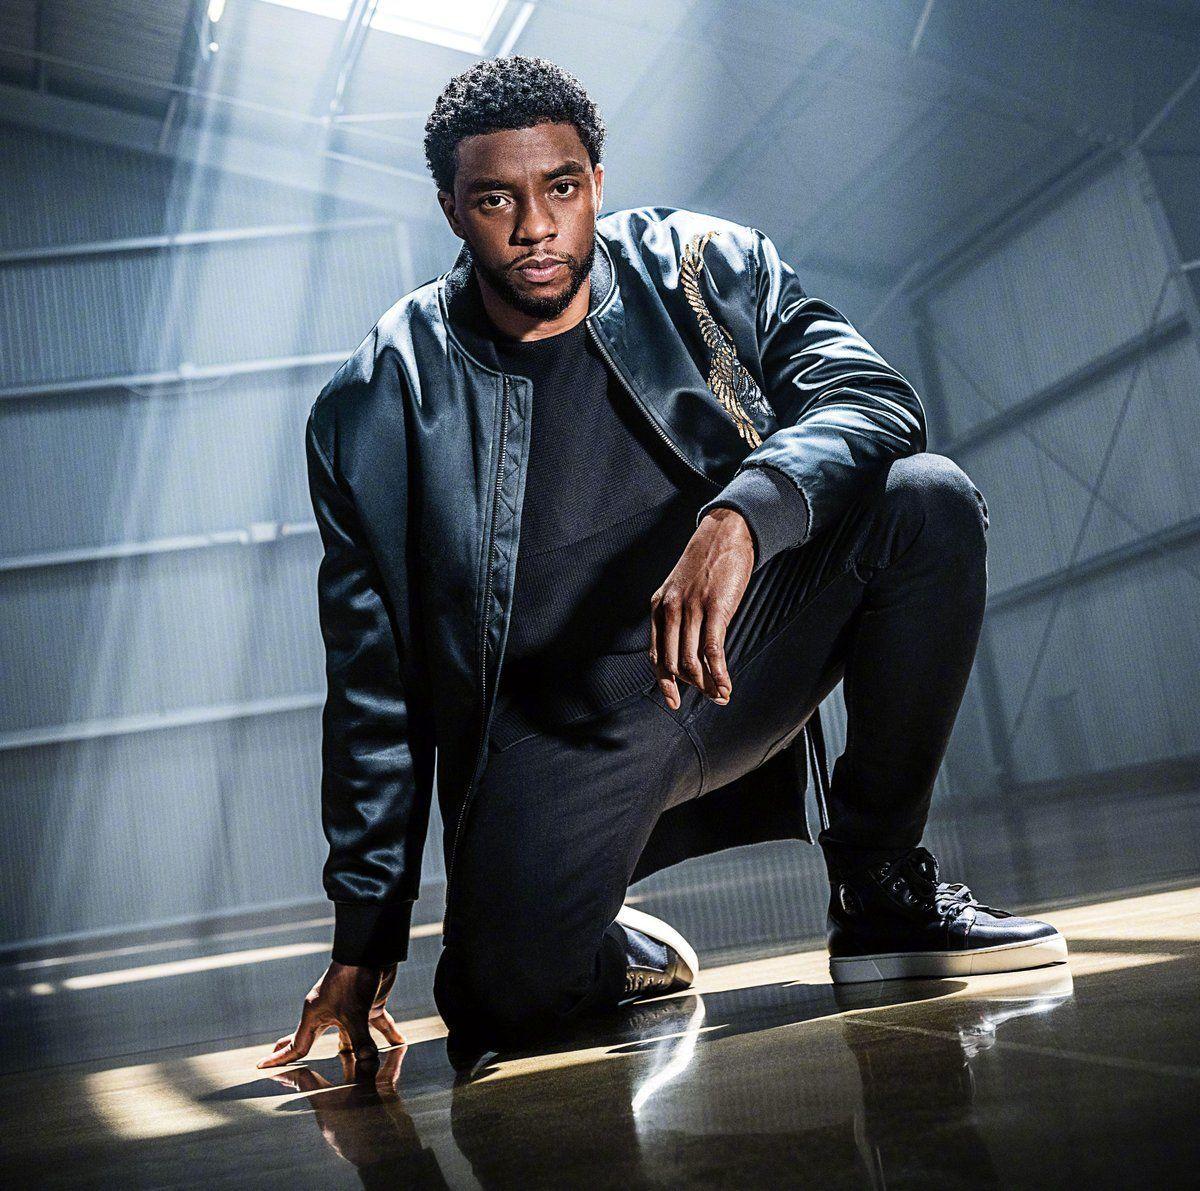 Jason (Black Panther)'s Black Panther star